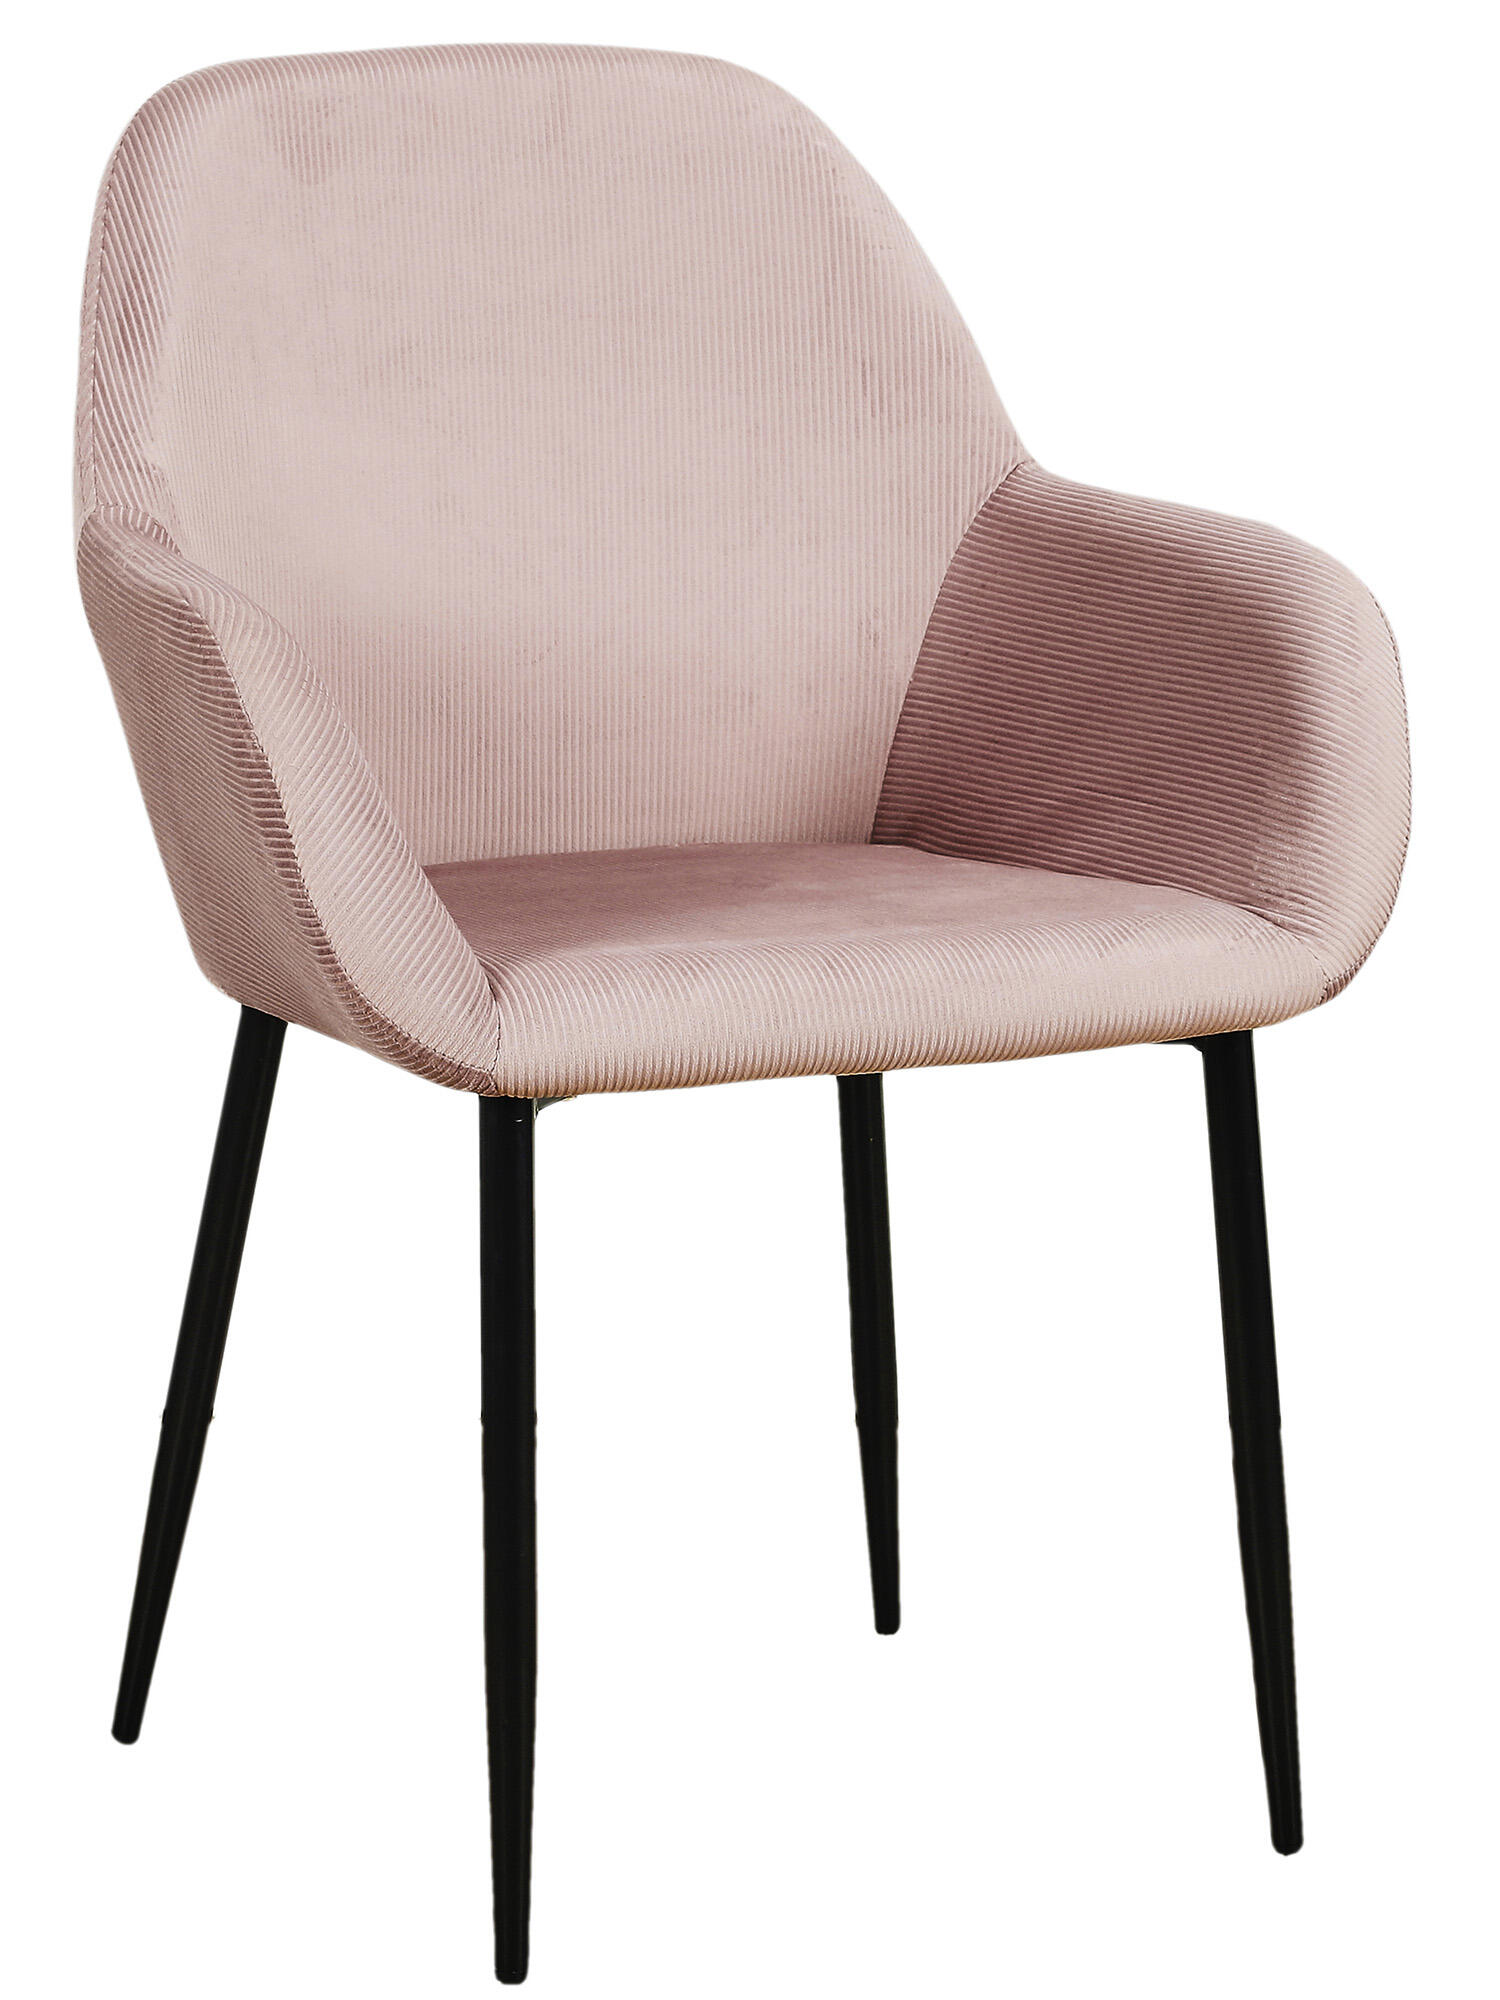 Set de 2 sillas de comedor giulia de madera color rosa de 85x55,7x59cm